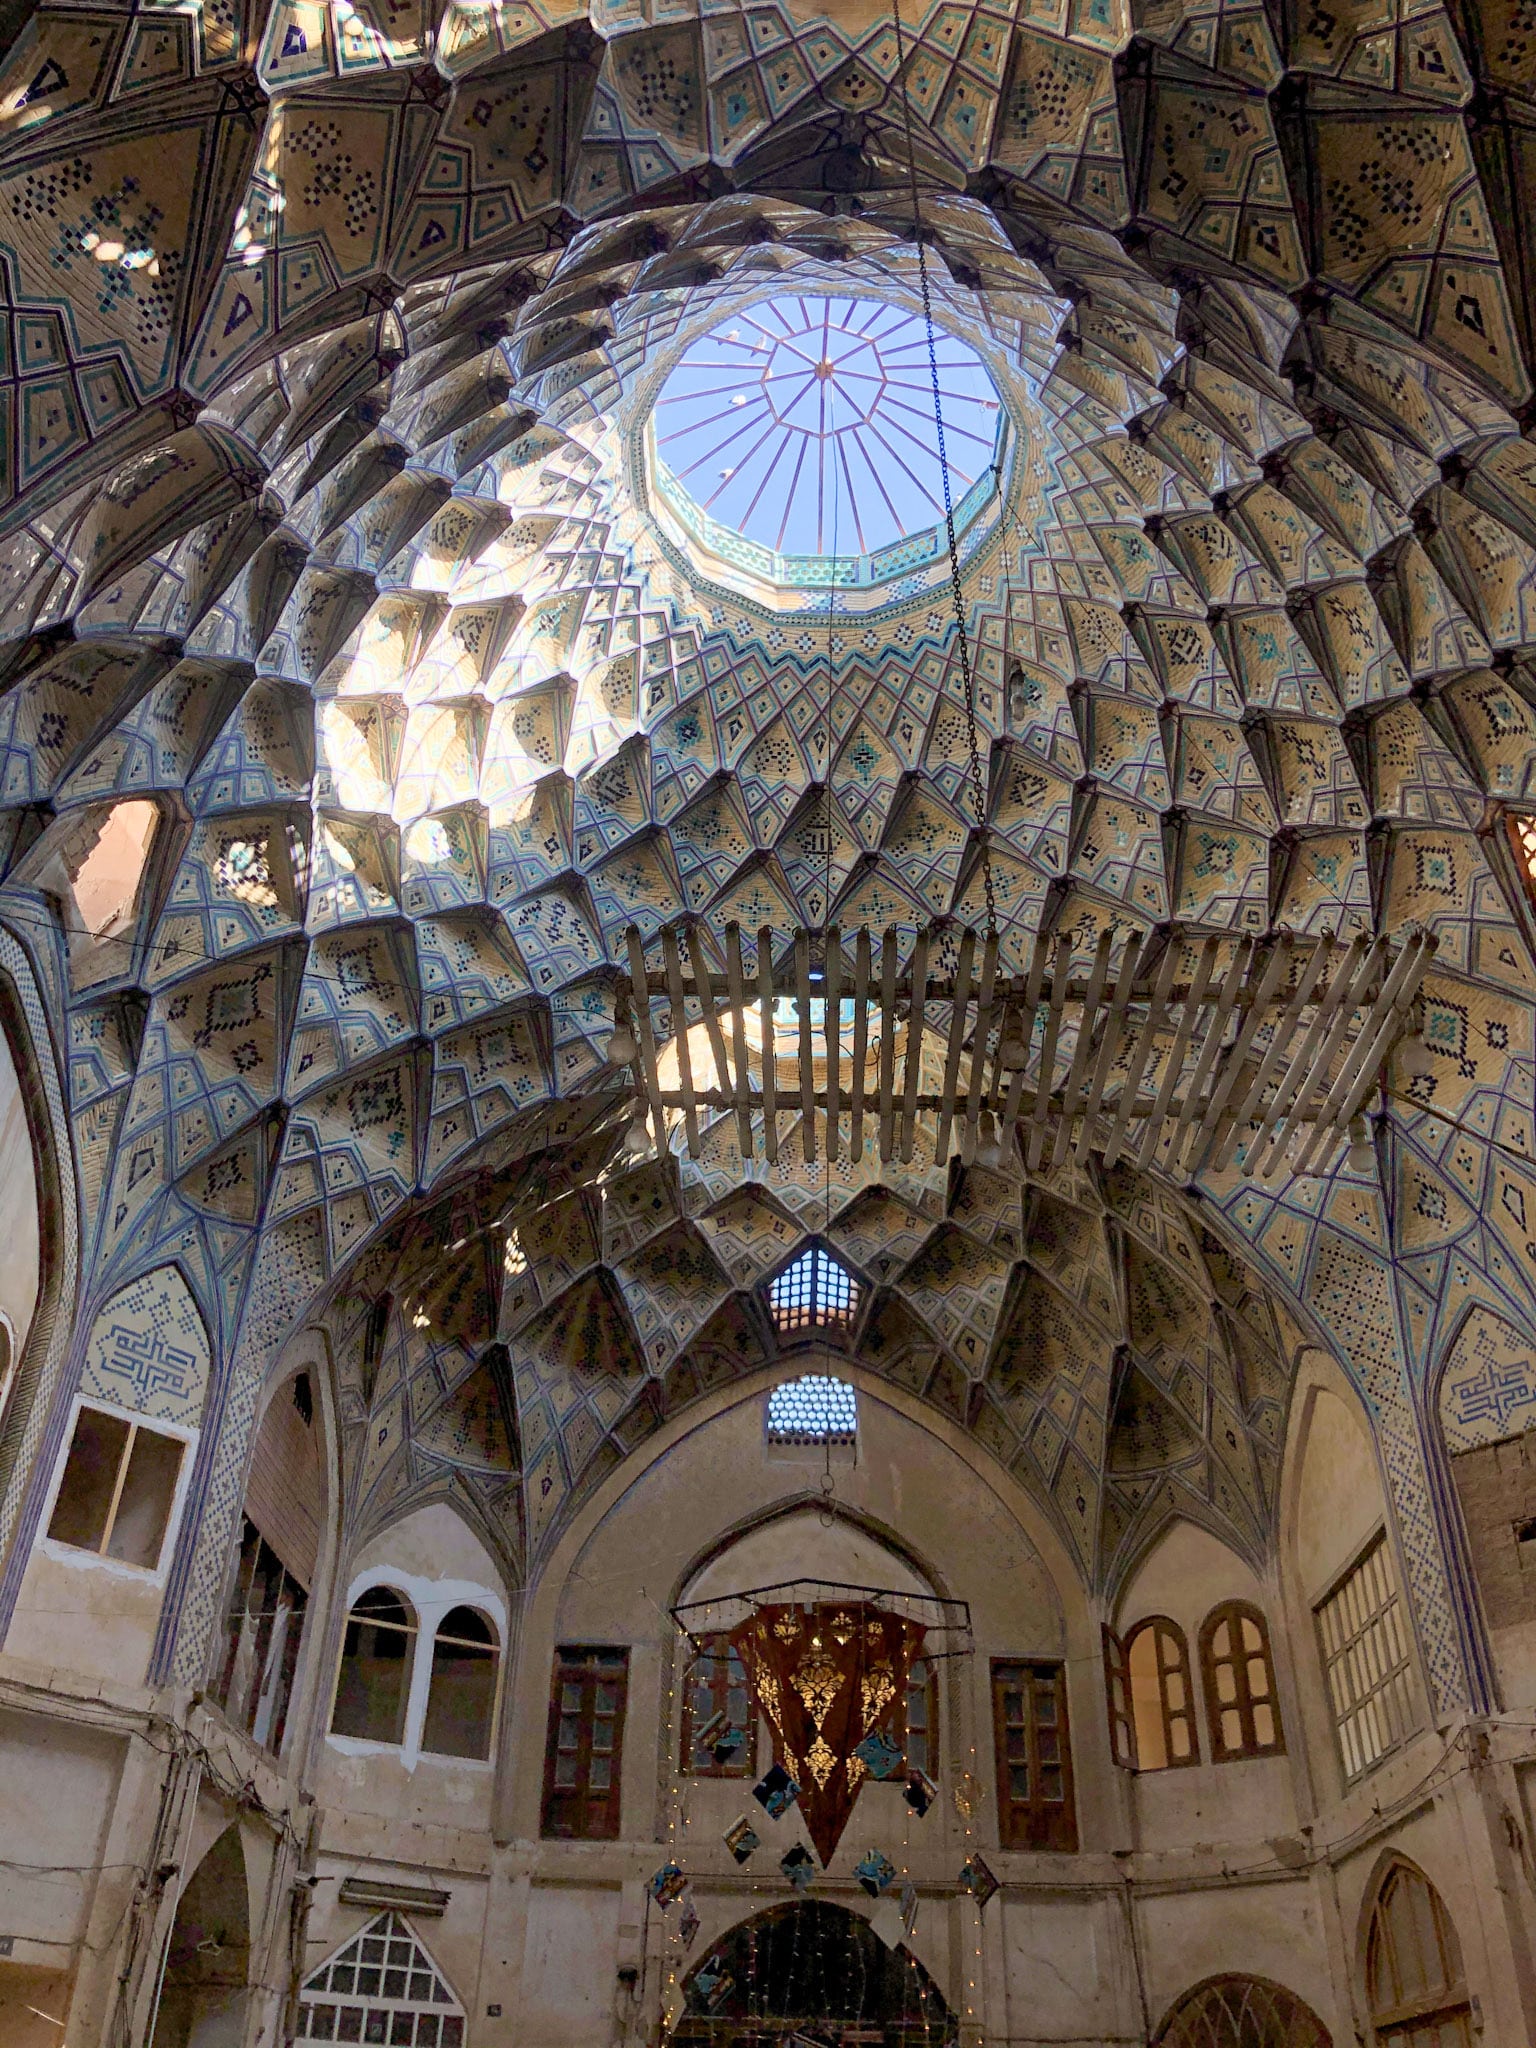 Domed ceiling in Kashan bazaar, Iran